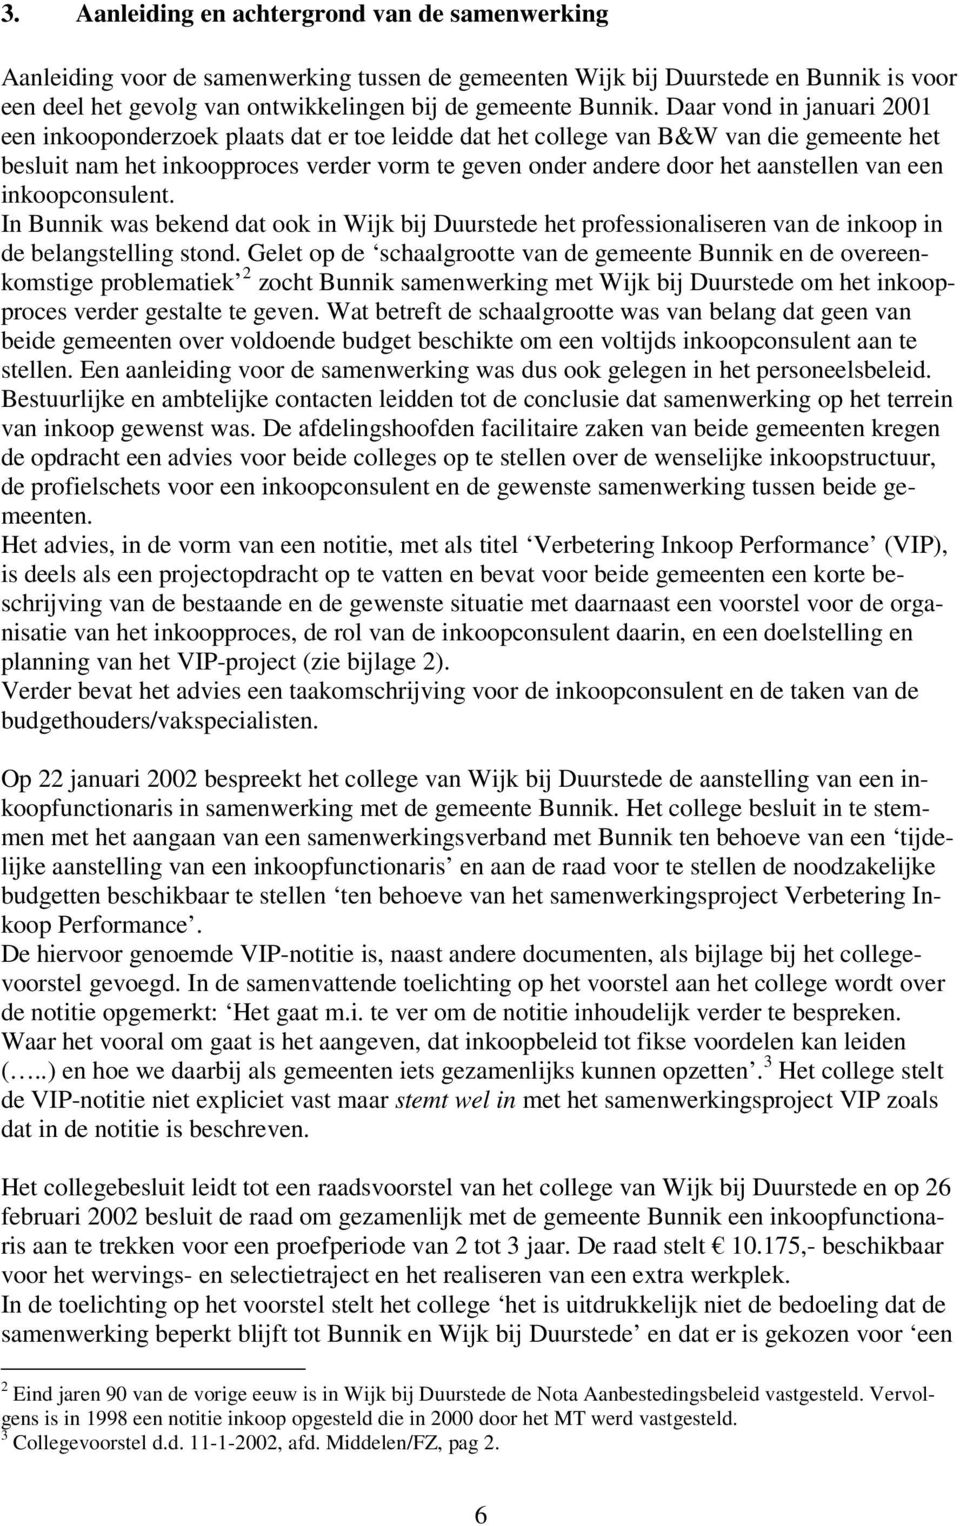 van een inkoopconsulent. In Bunnik was bekend dat ook in Wijk bij Duurstede het professionaliseren van de inkoop in de belangstelling stond.